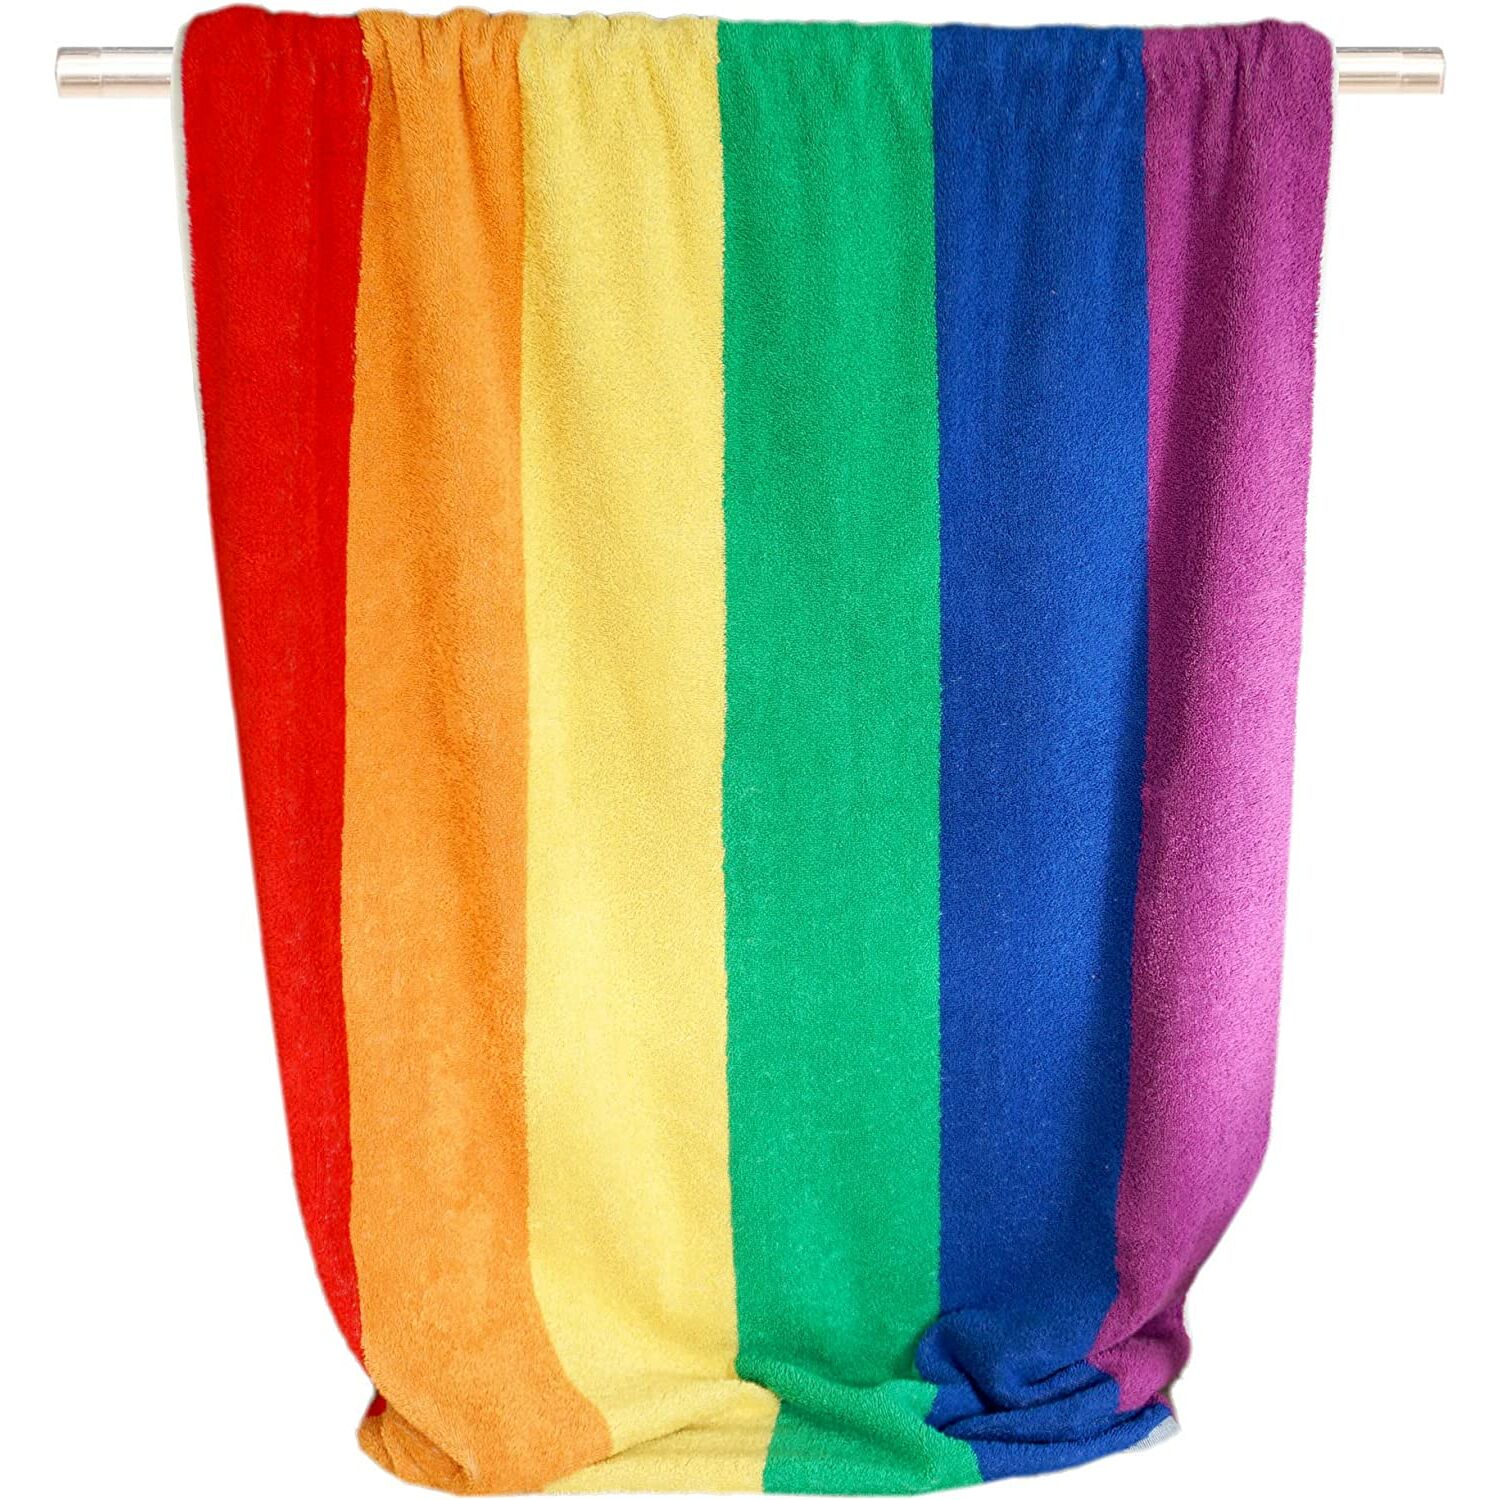 Handtuch Regenbogen :: mit Handtücher Buntes groß cm, Streifen, Strandtuch 90x180 Frottee Badetuch